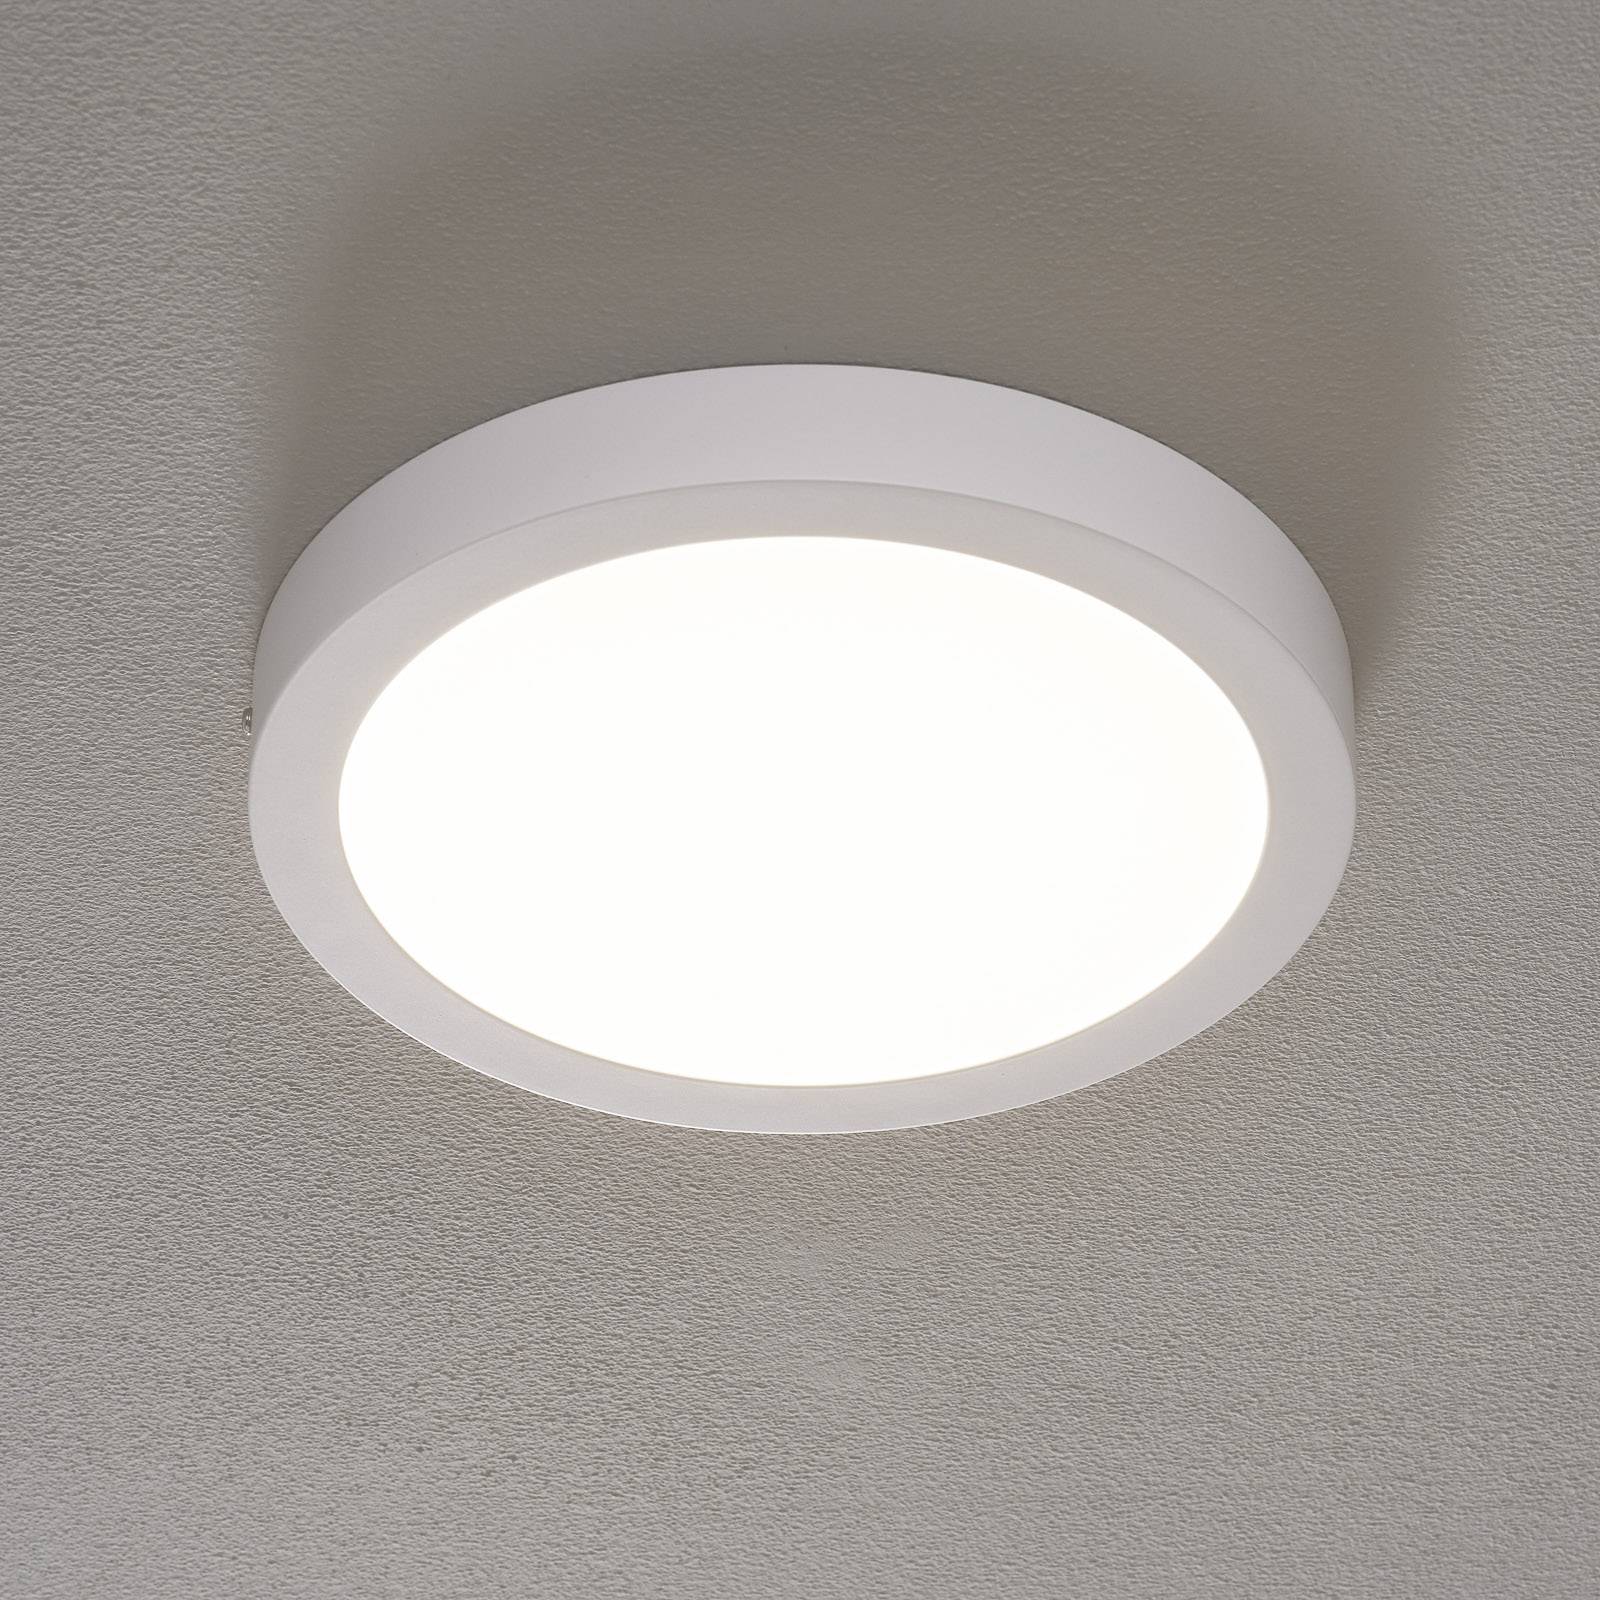 Lampa sufitowa LED Fueva Connect, 30 cm, biała